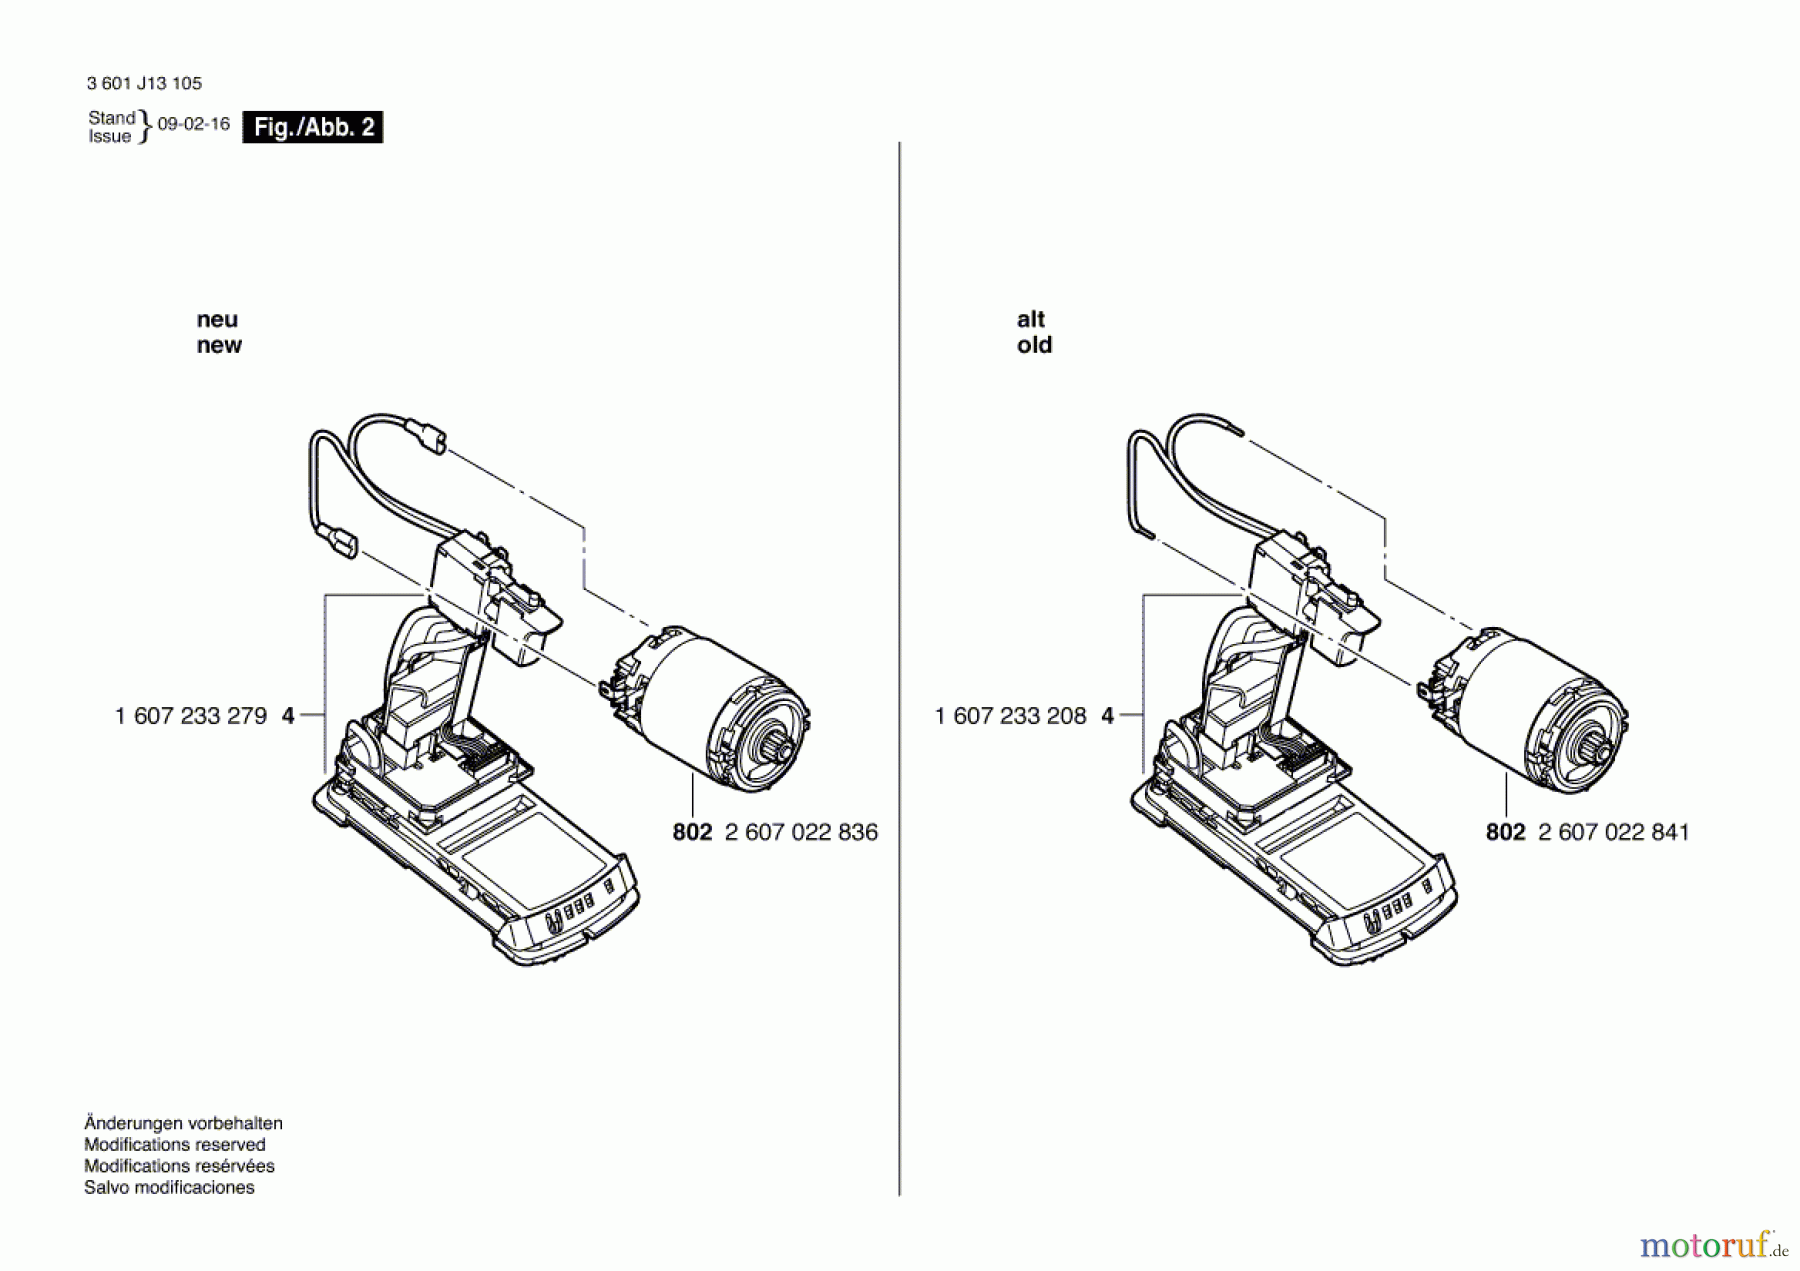  Bosch Akku Werkzeug Akku-Schlagbohrmaschine A-SBS 36 V-LI Seite 2